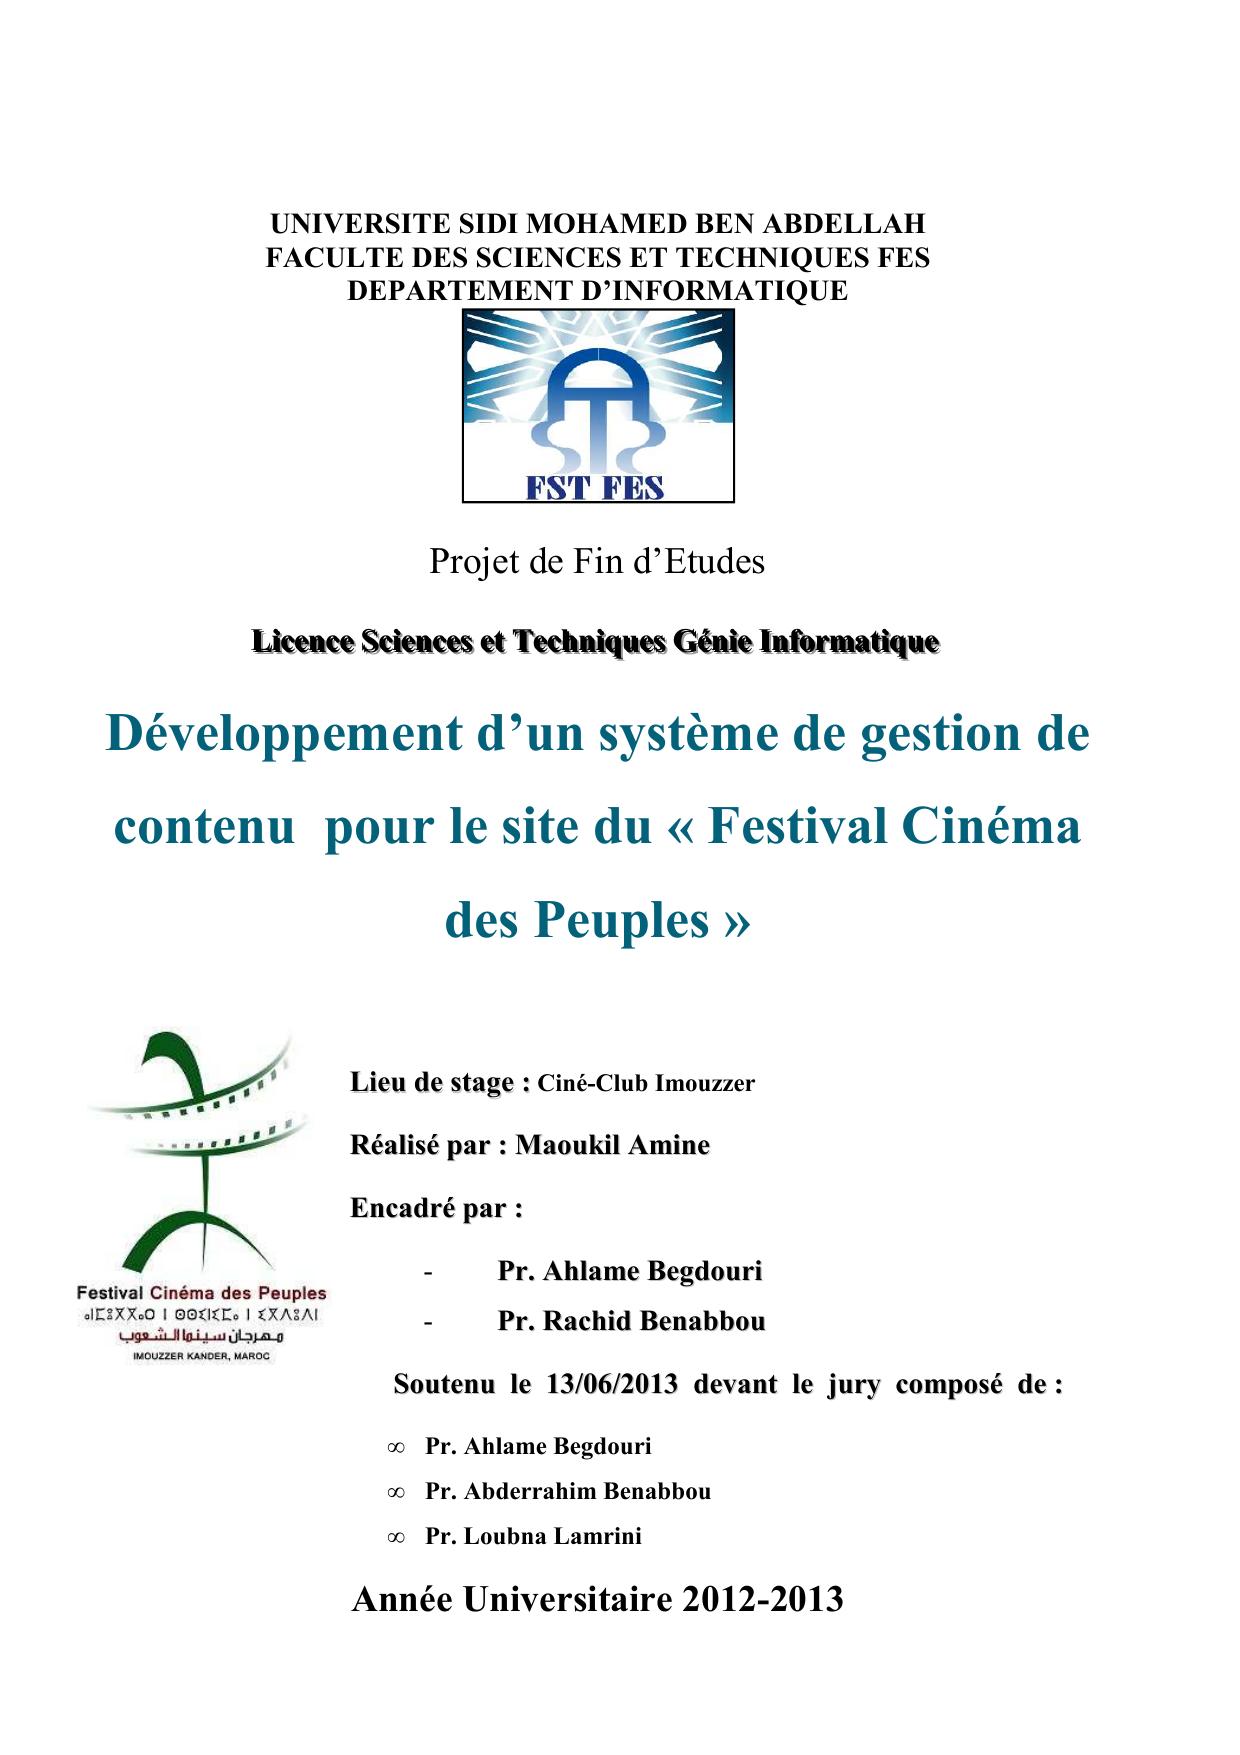 Développement d’un système de gestion de contenu pour le site du « Festival Cinéma des Peuples »